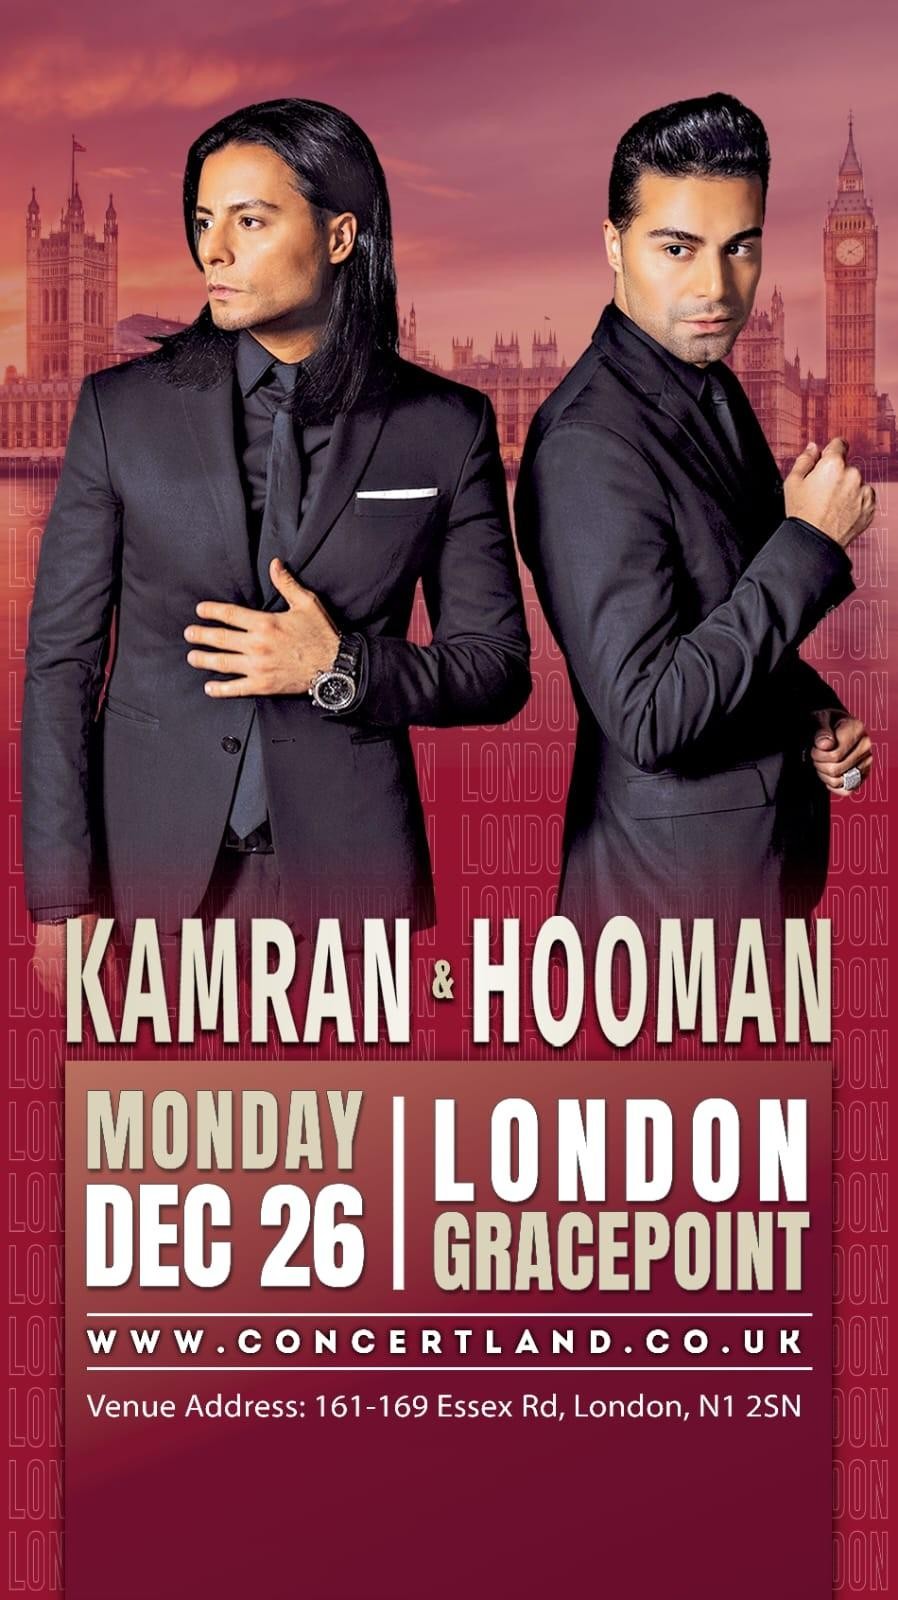 Kamran & Hooman live in London